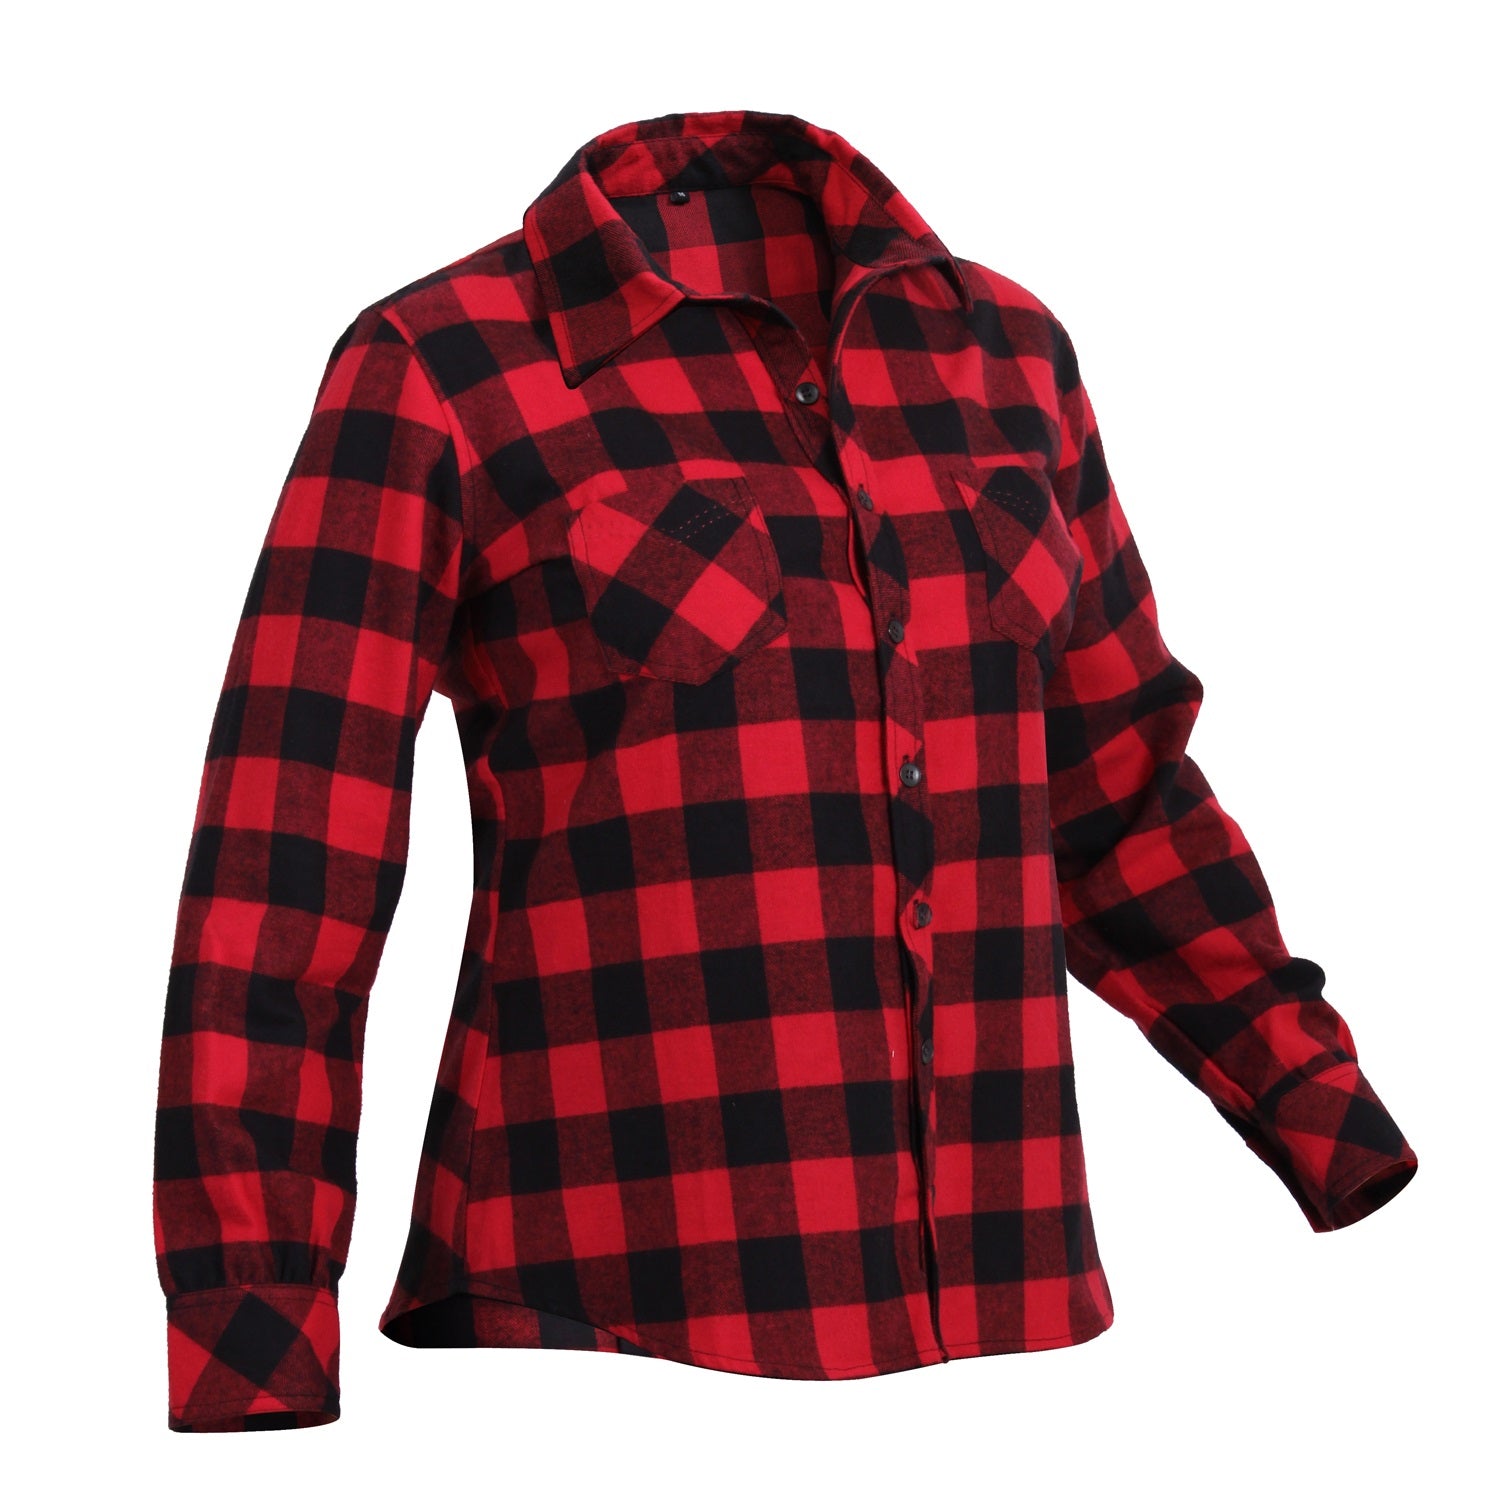 Rothco Extra Heavyweight Buffalo Plaid Flannel Shirt, Red Plaid, 2XL